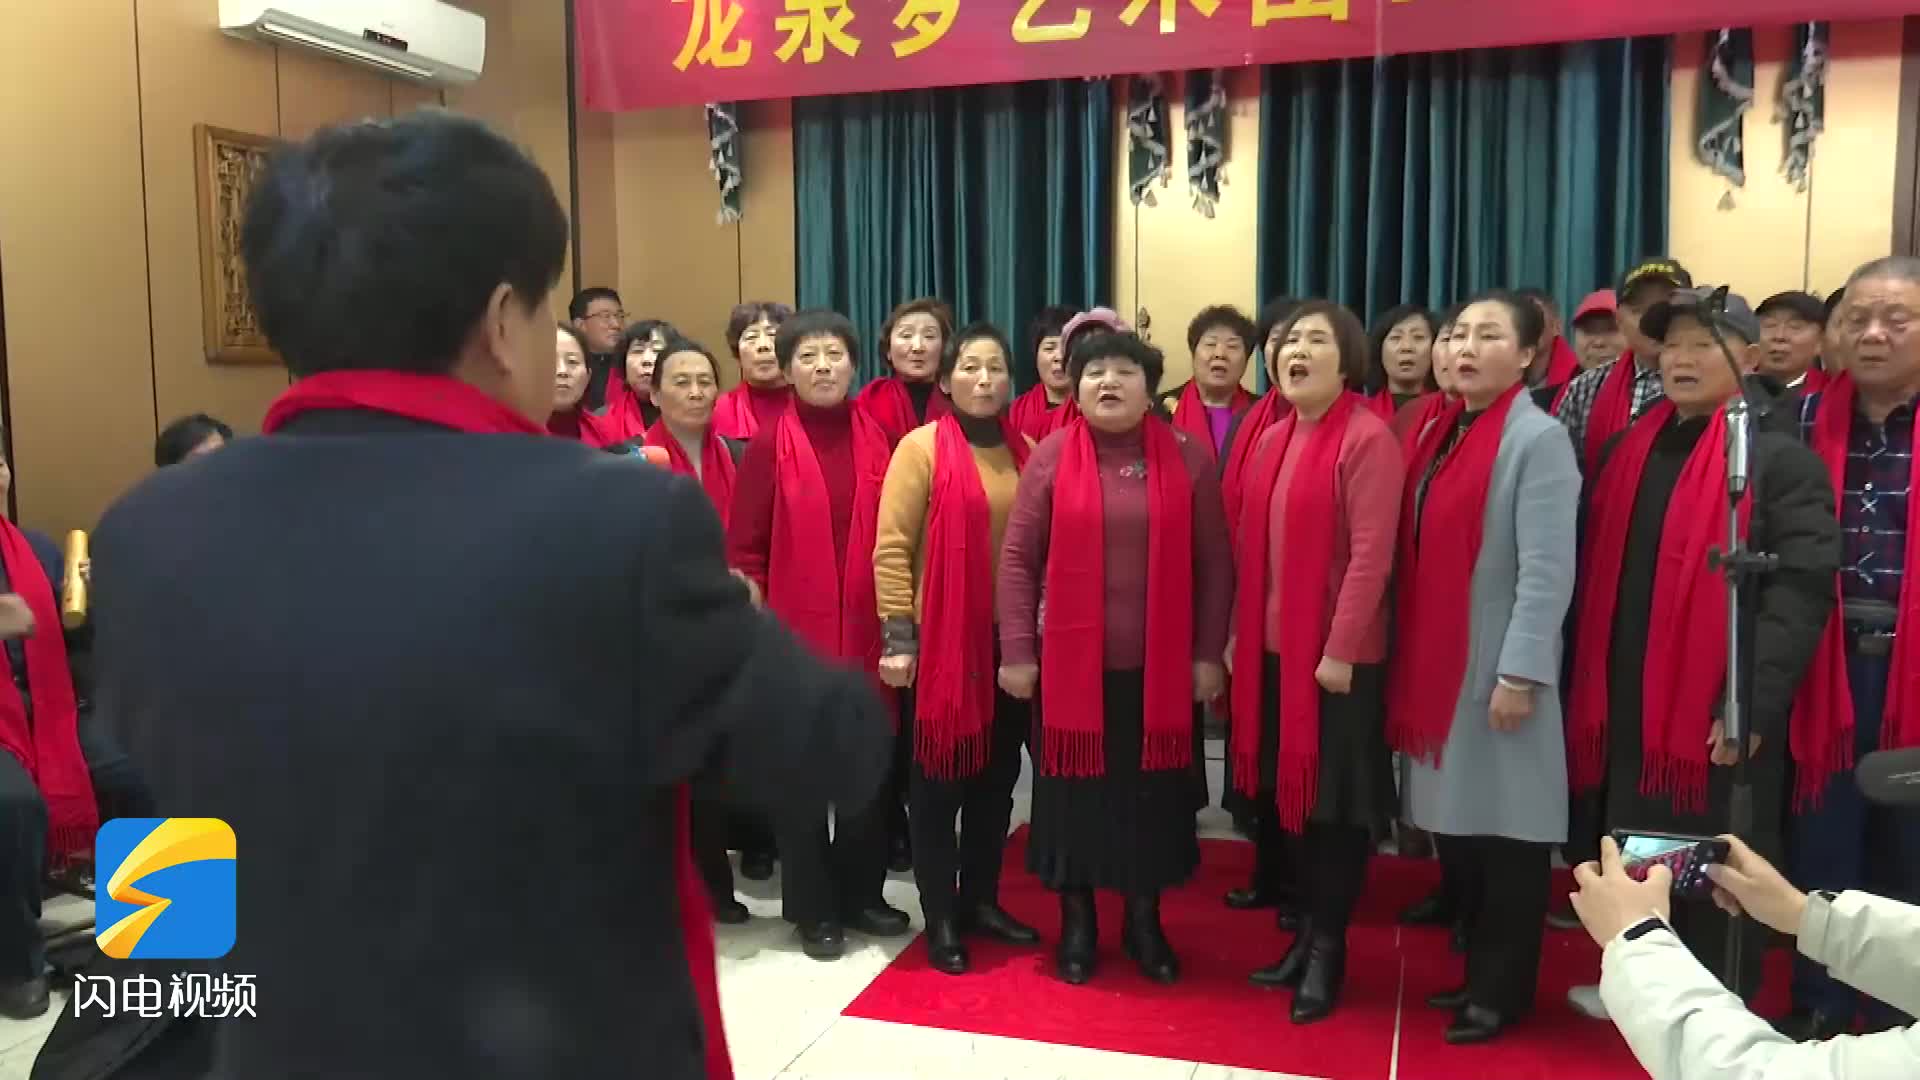 滕州市老年文化志愿者 歌唱祖国庆元旦